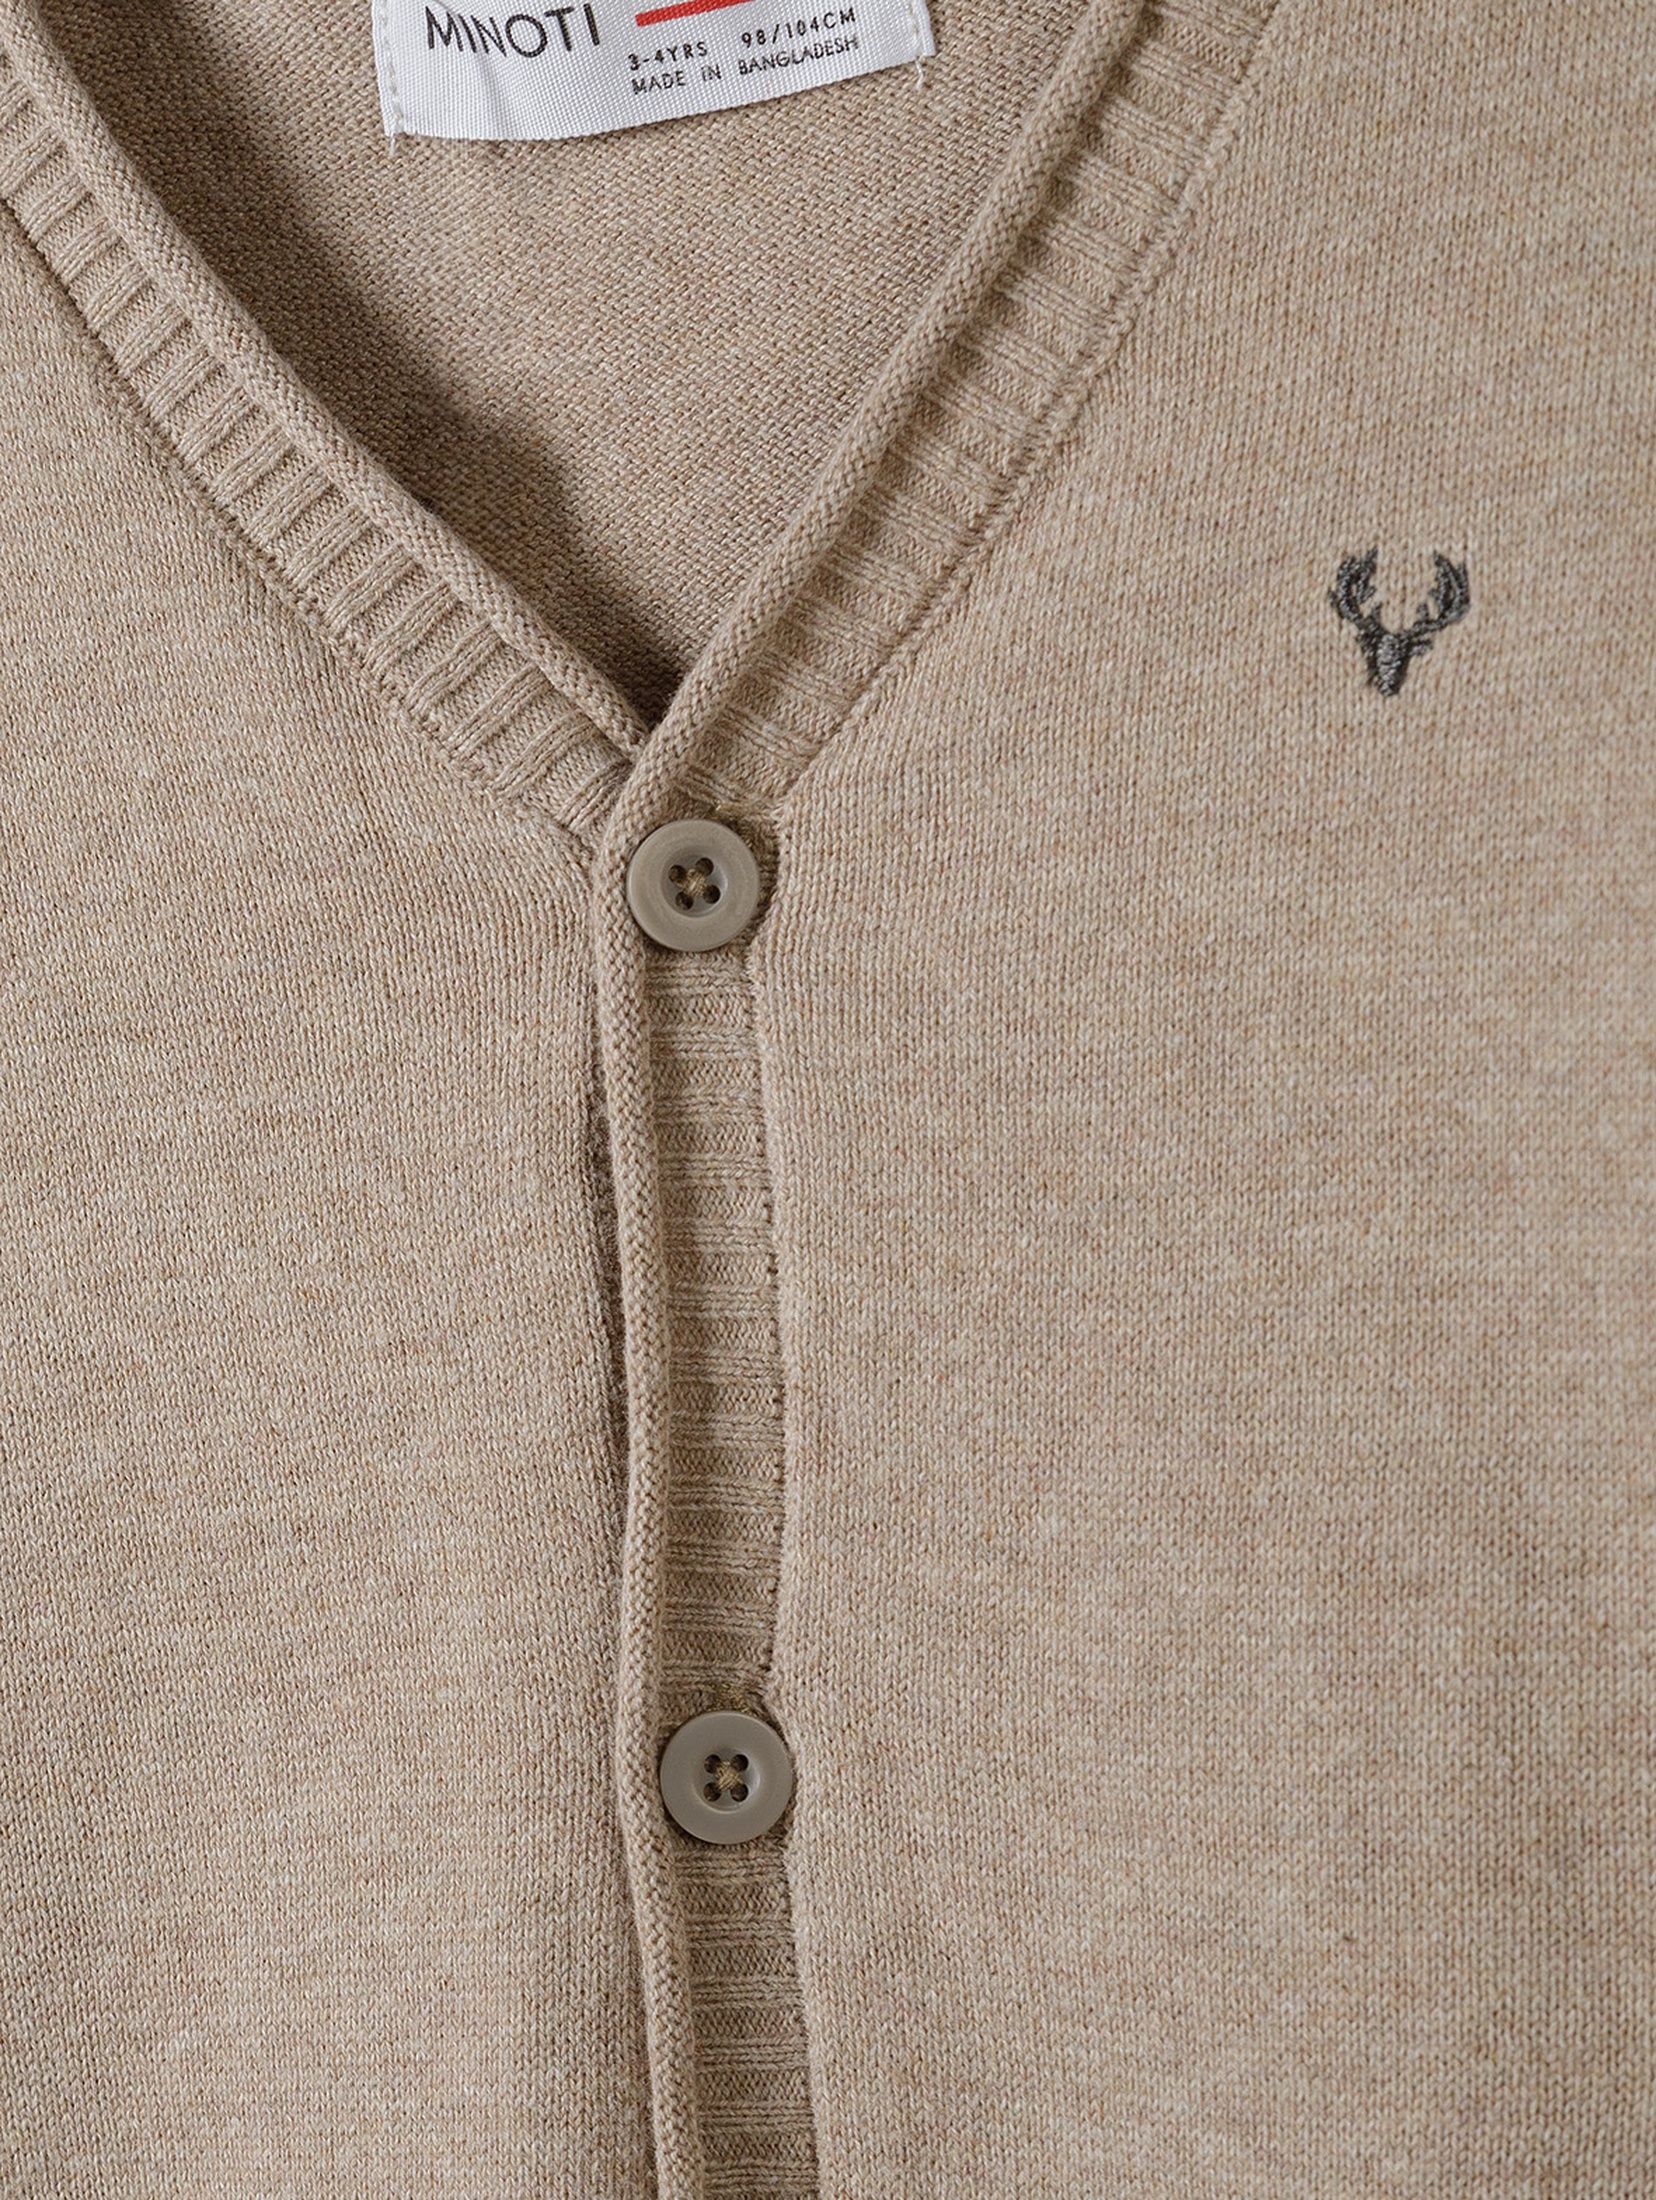 Klasyczny sweter zapinany na guziki dla chłopca - beżowy